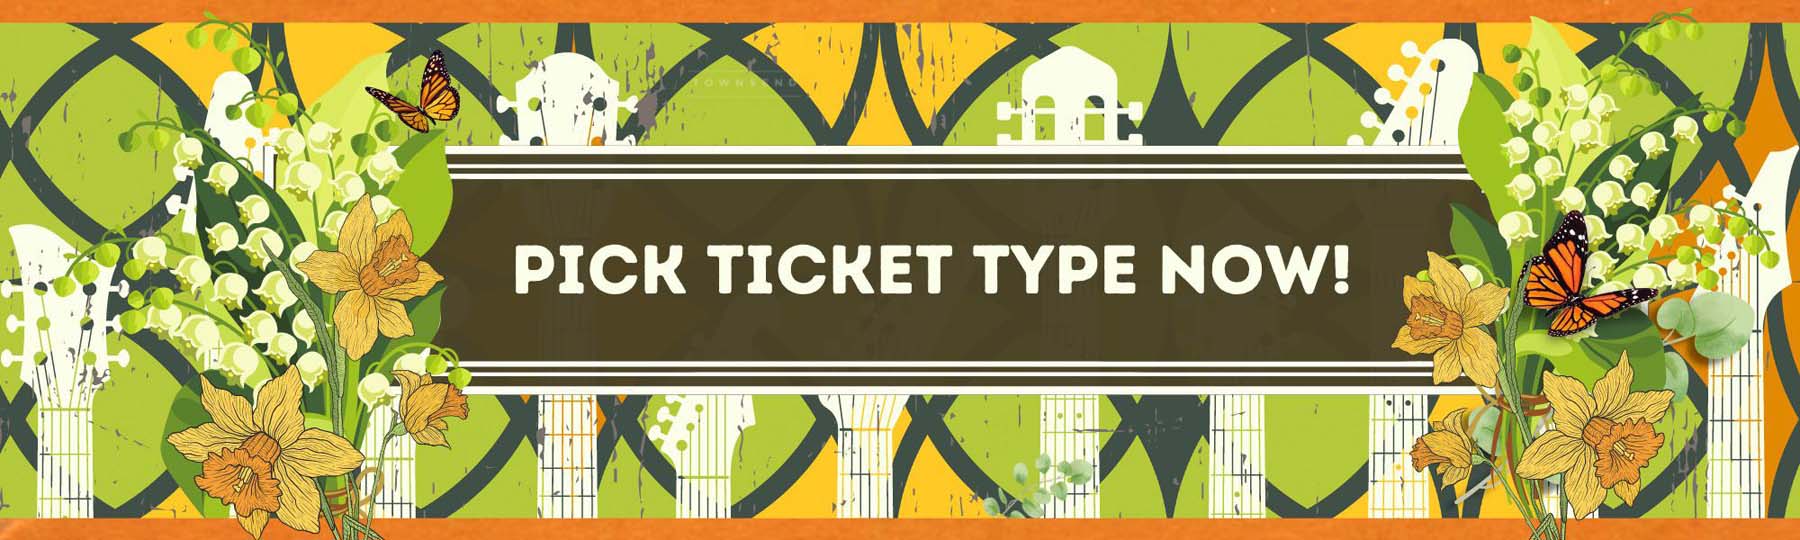 Pick Ticket Type